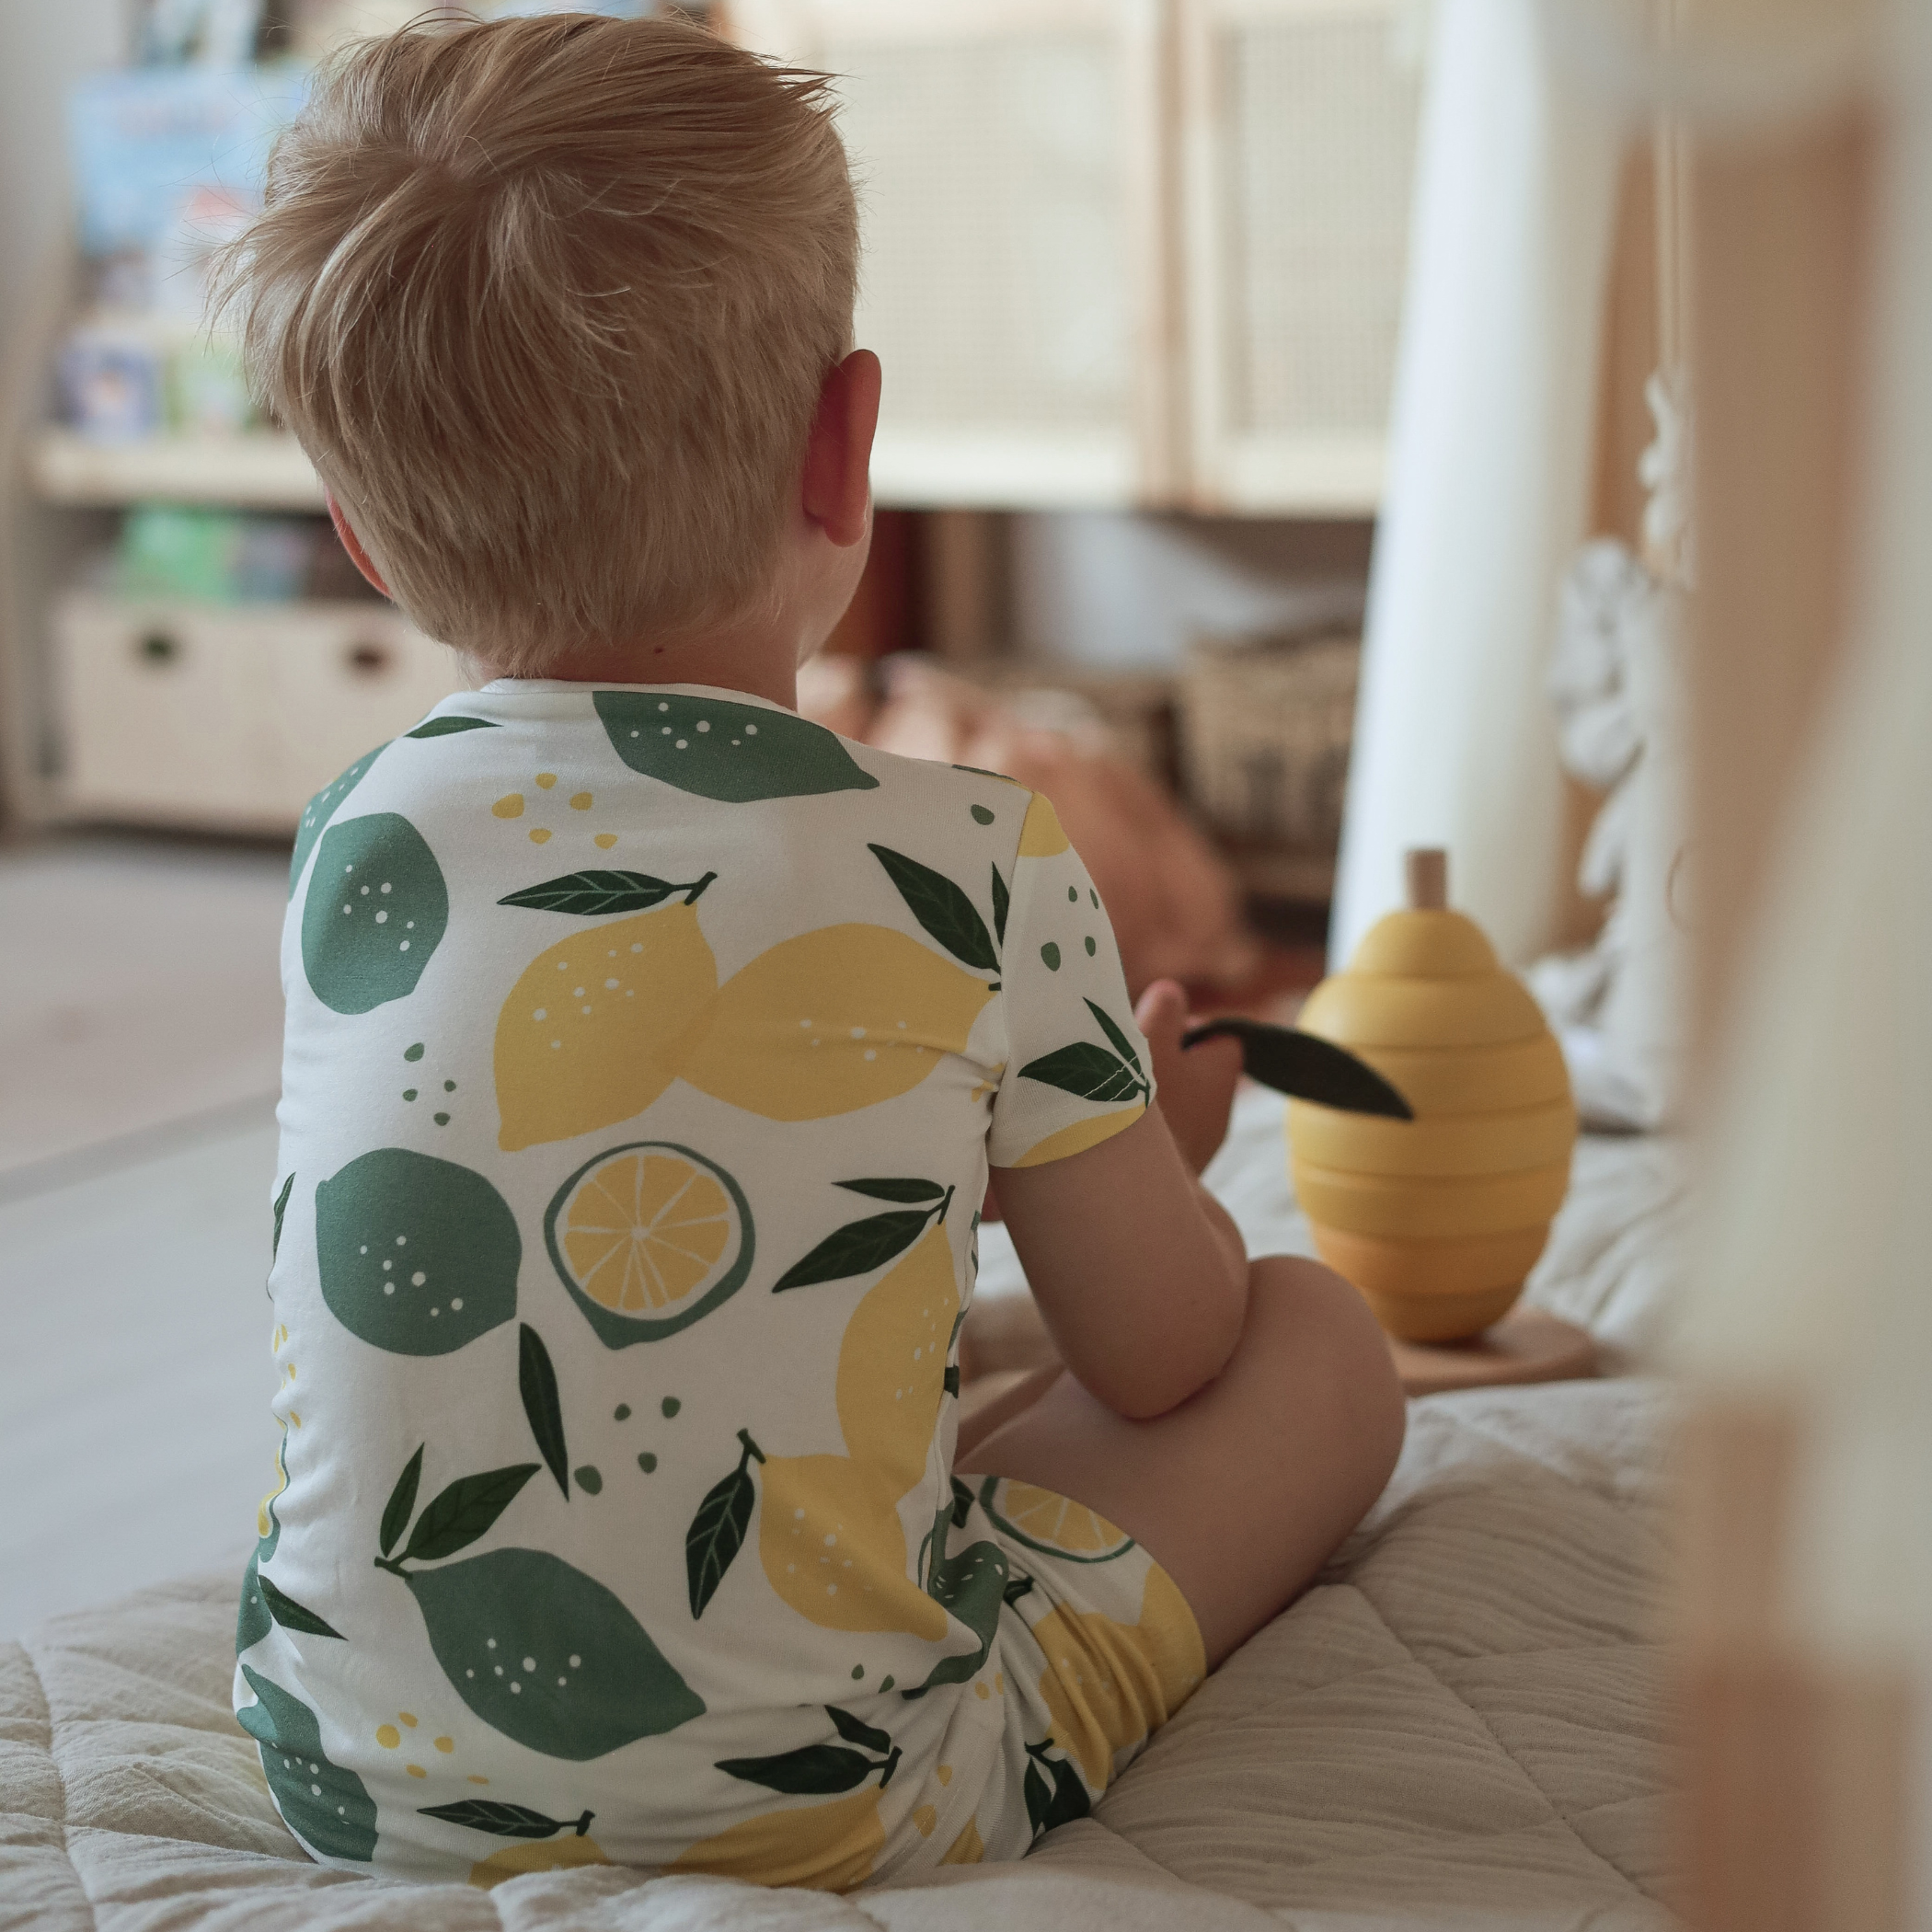 Kort pyjamas för barn Lemons